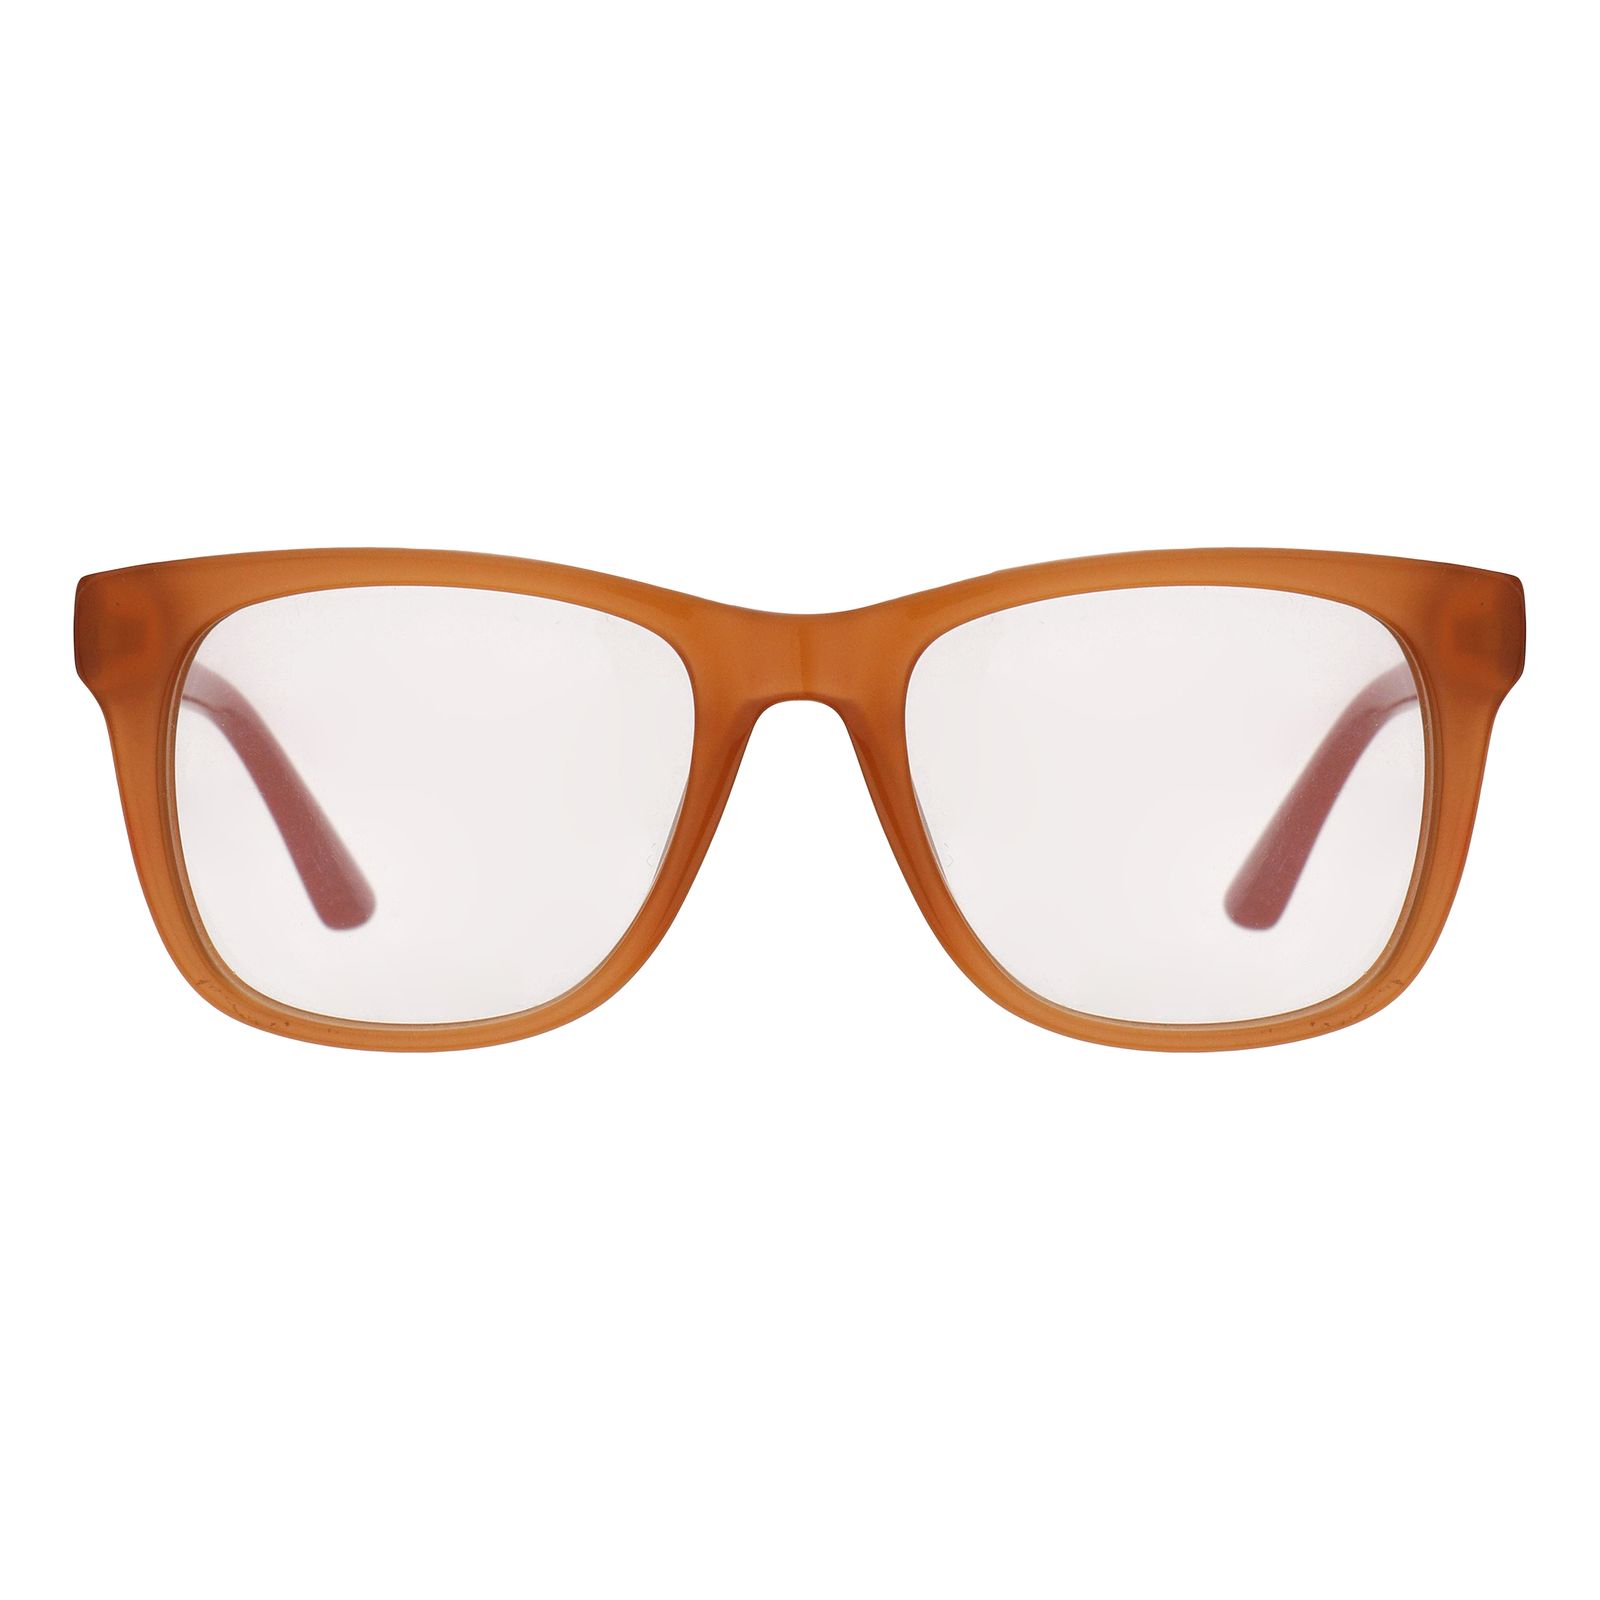 فریم عینک طبی زنانه لاگوست مدل 3614-800 -  - 1